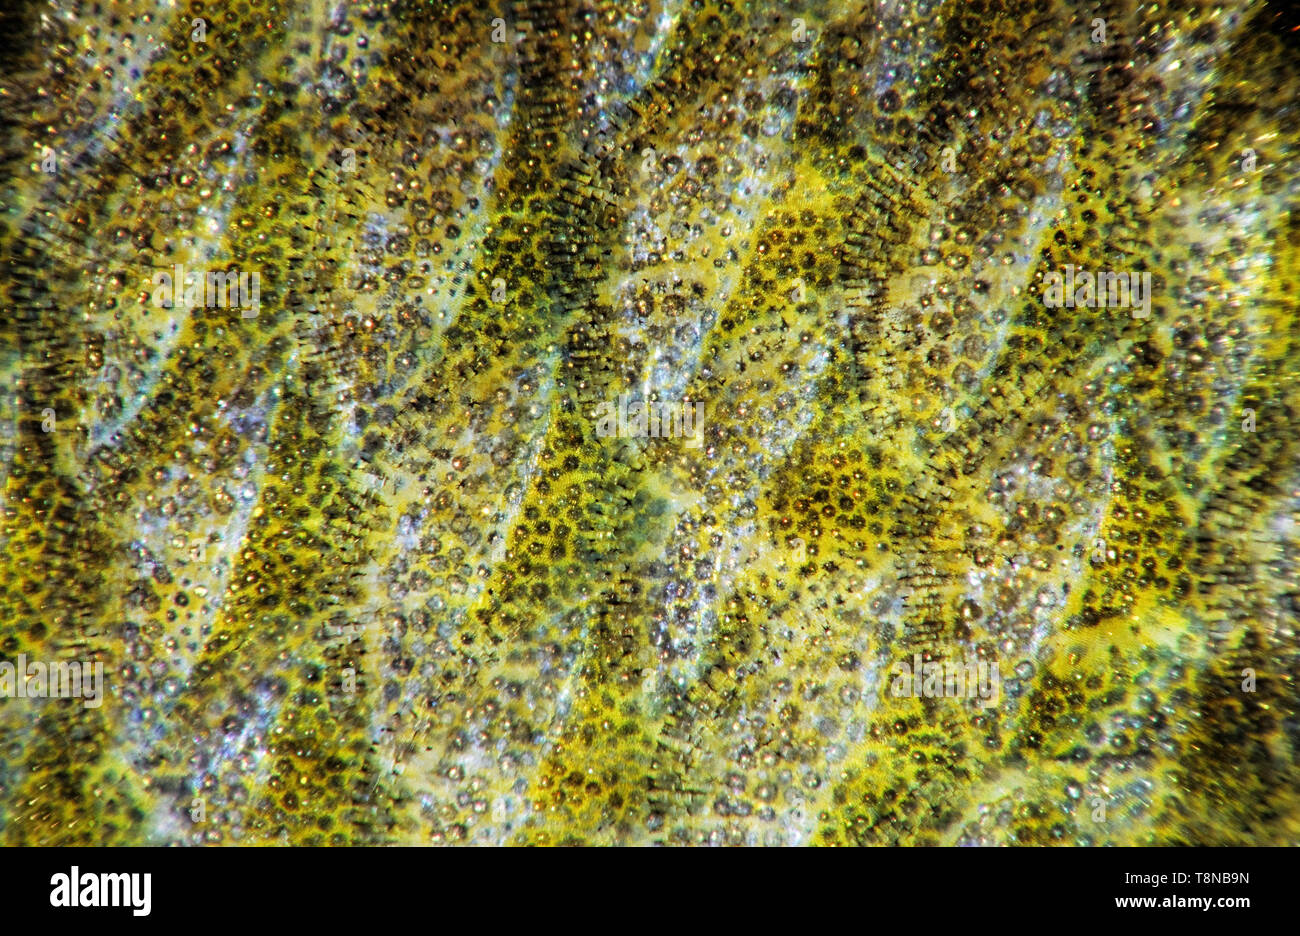 Fisch (Barsch Perca fluviatilis) Skala close-up. Sehr geringe Tiefenschärfe aufgrund hoher Vergrößerung. Fokus in der Mitte des Bildes. Kanten aus Stockfoto